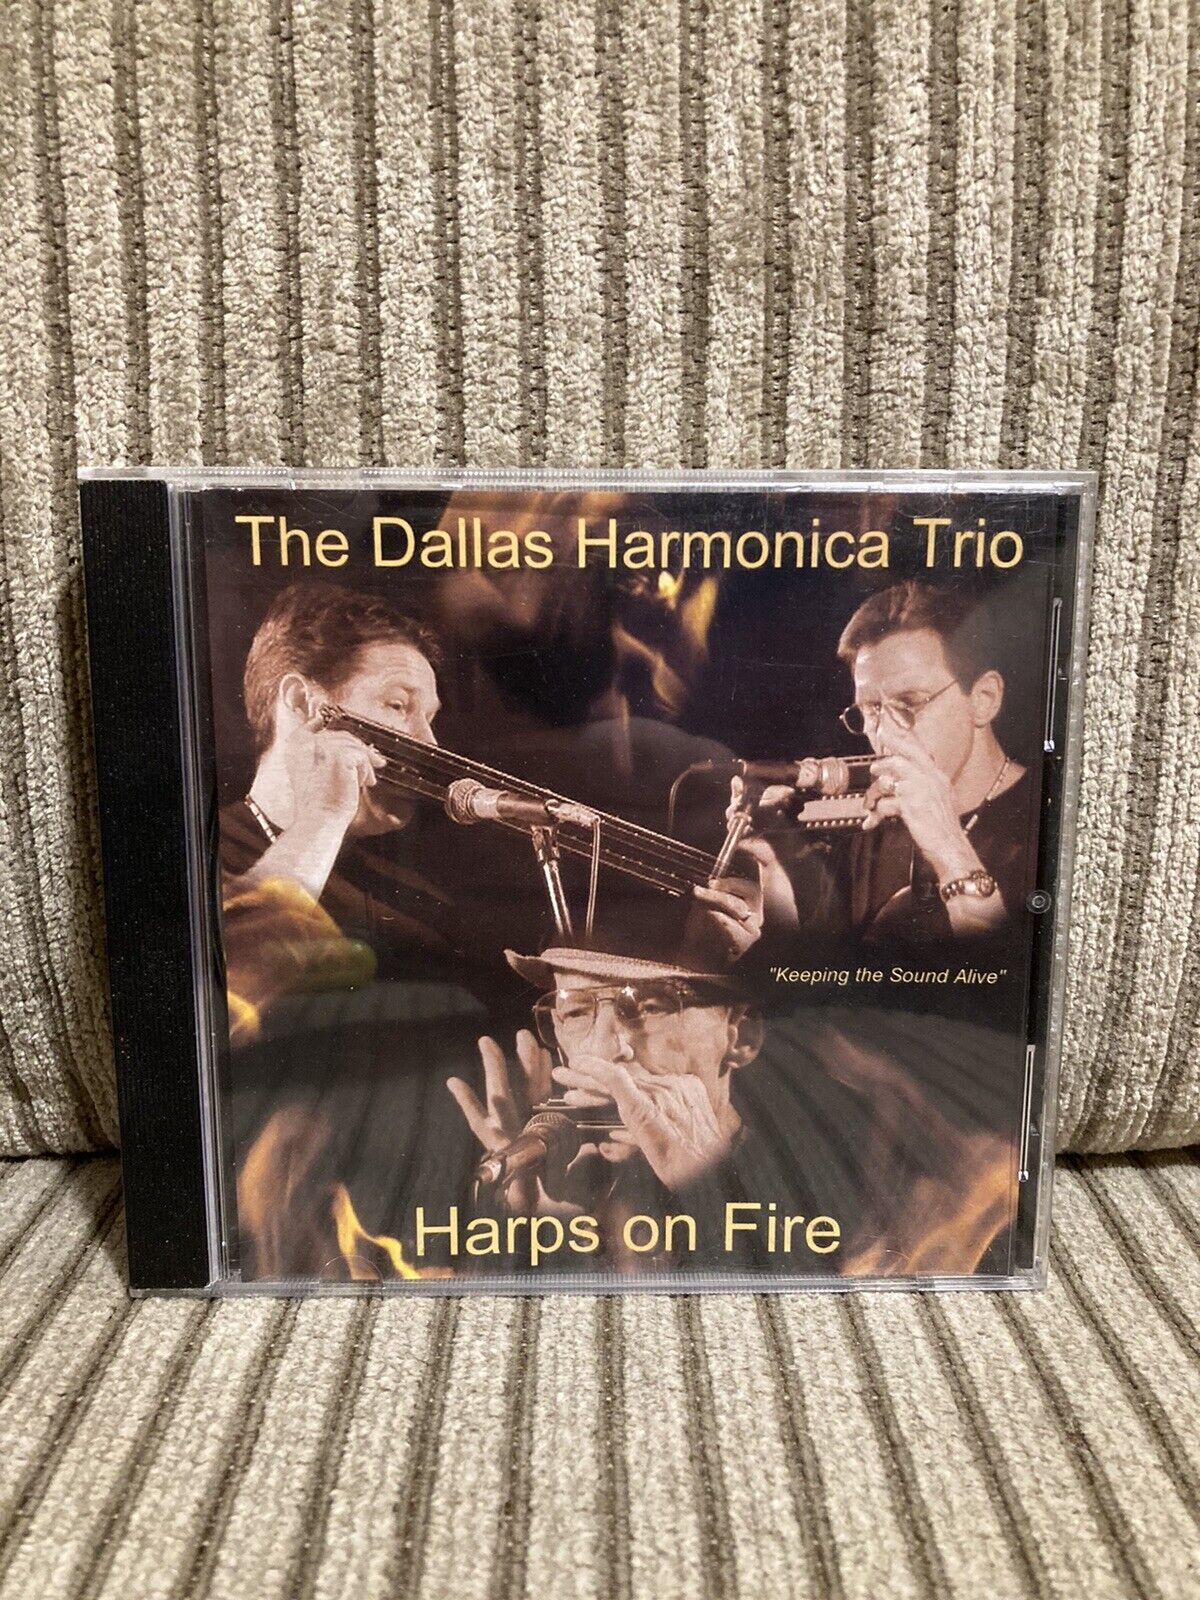 The Dallas Harmonica Trio - Harps on Fire CD Rare Tested